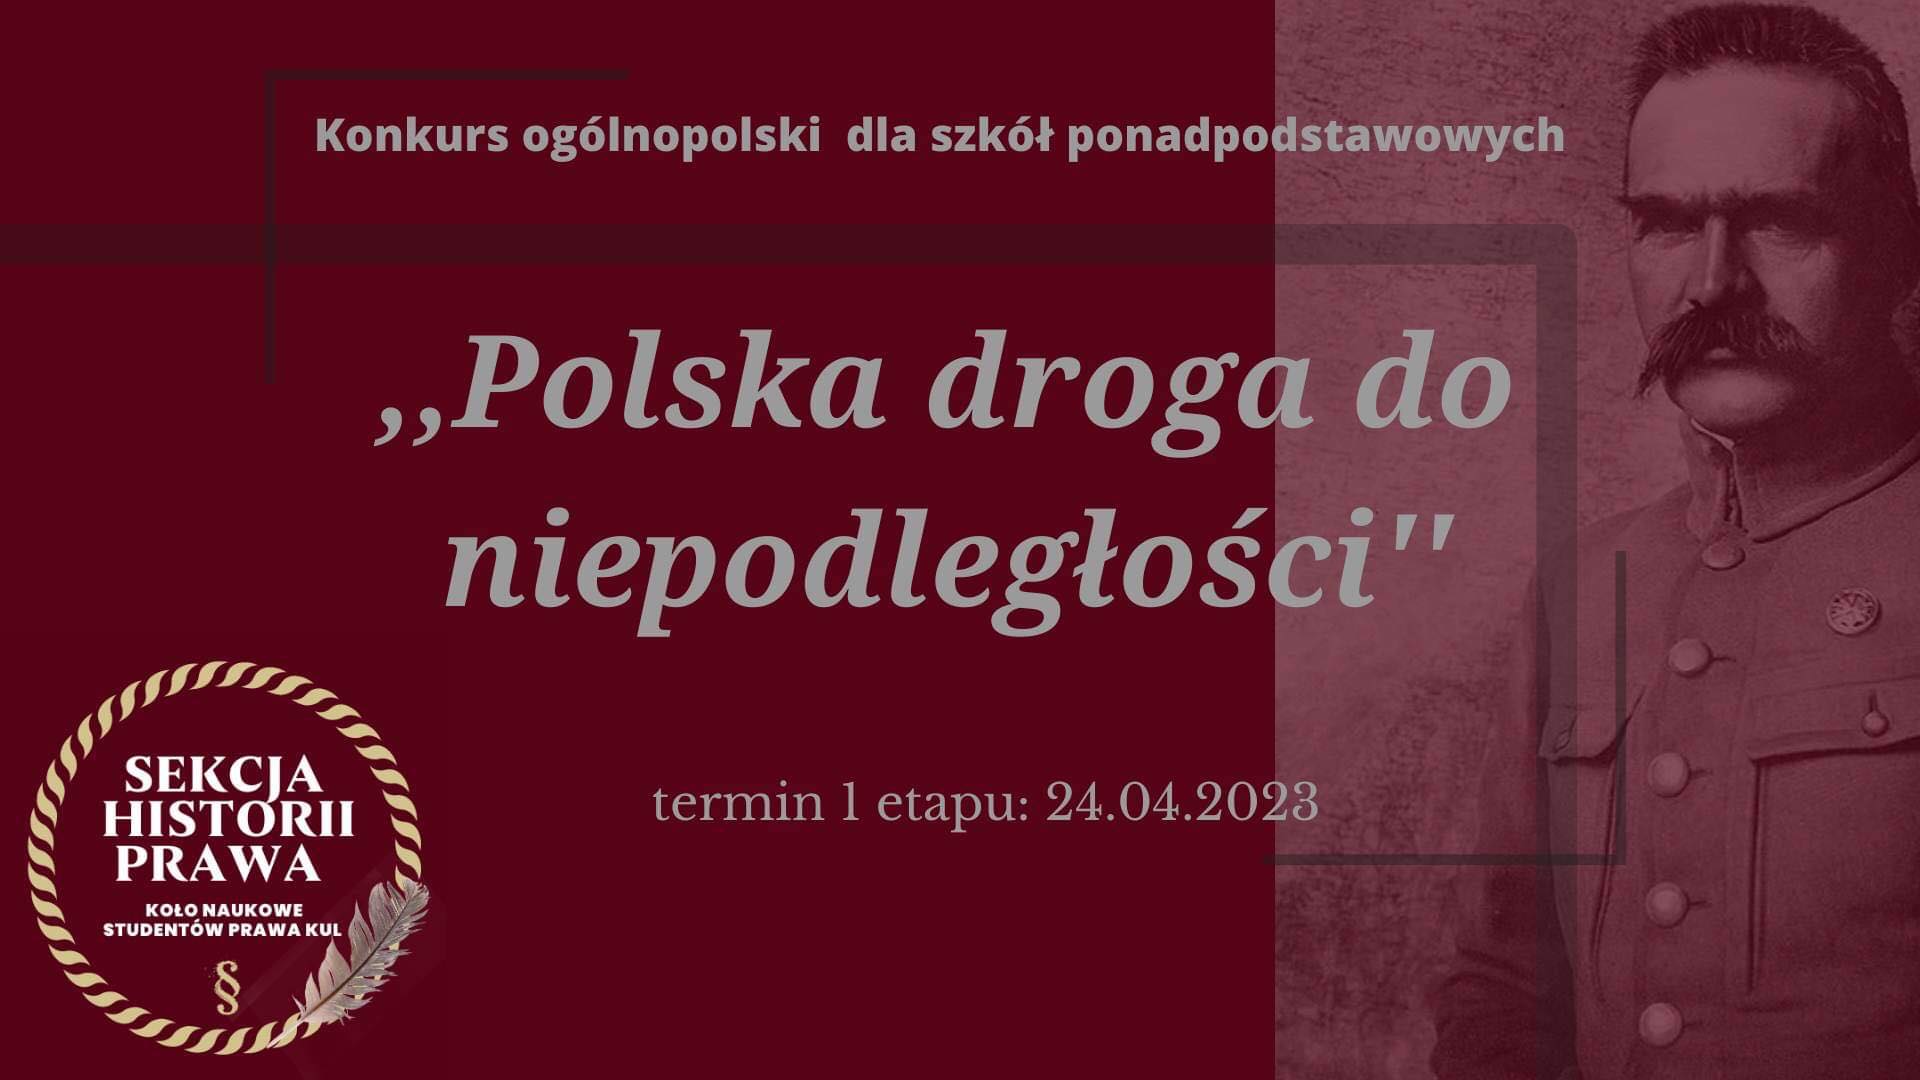 RODM Lublin patronem konkursu „Polska droga do niepodległości”